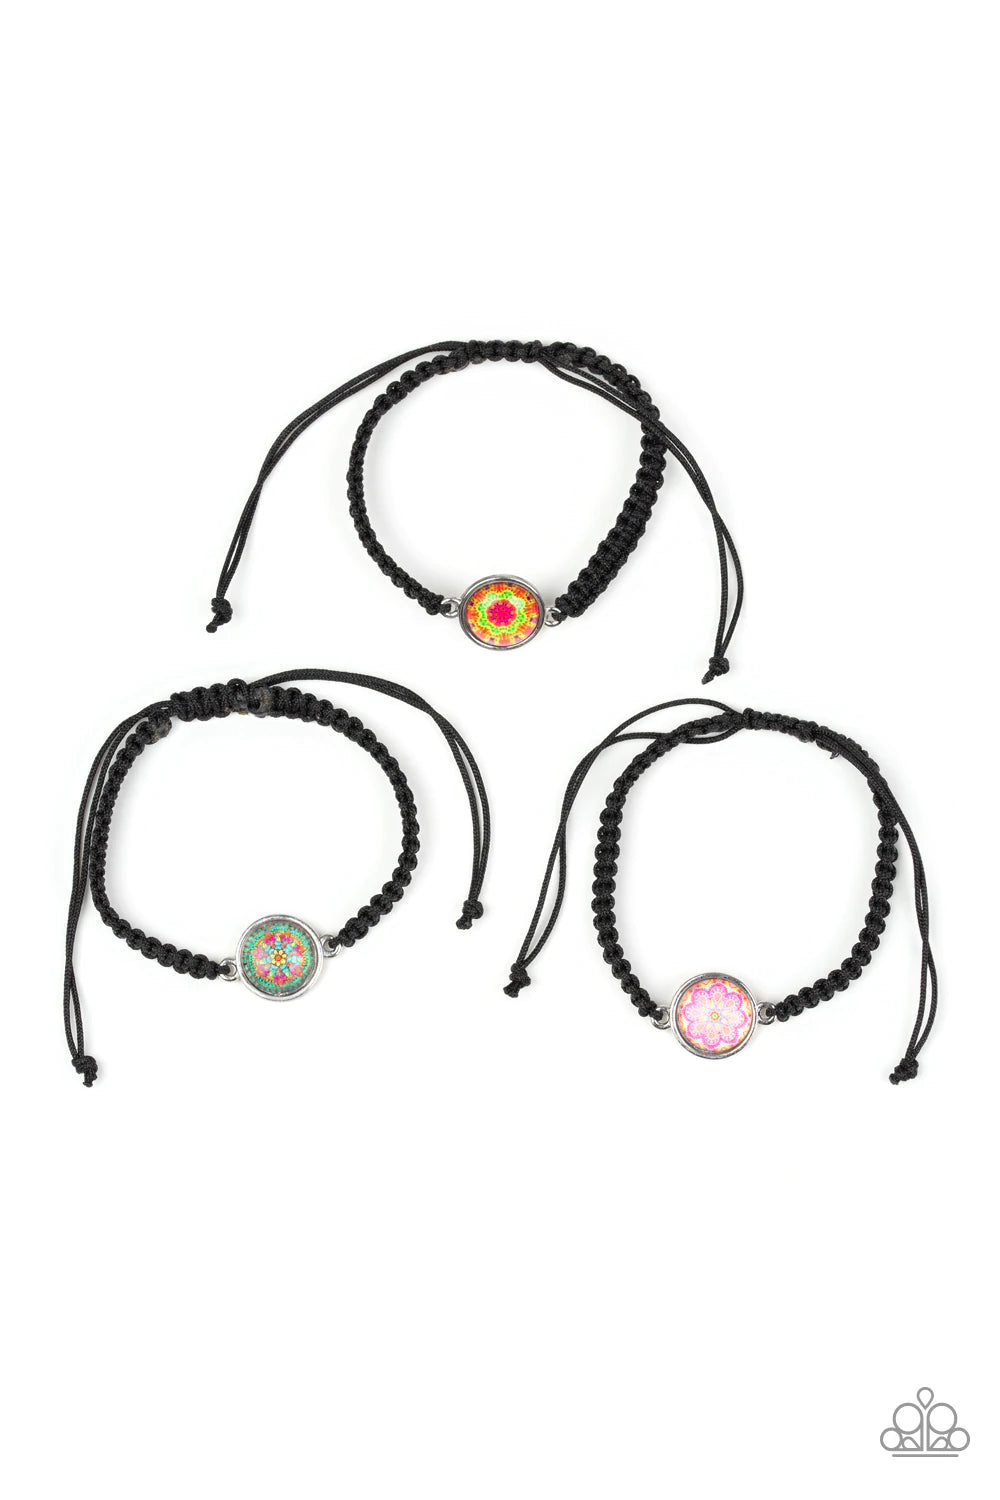 Starlet Shimmer Mandala Design Pull String Bracelet Kit